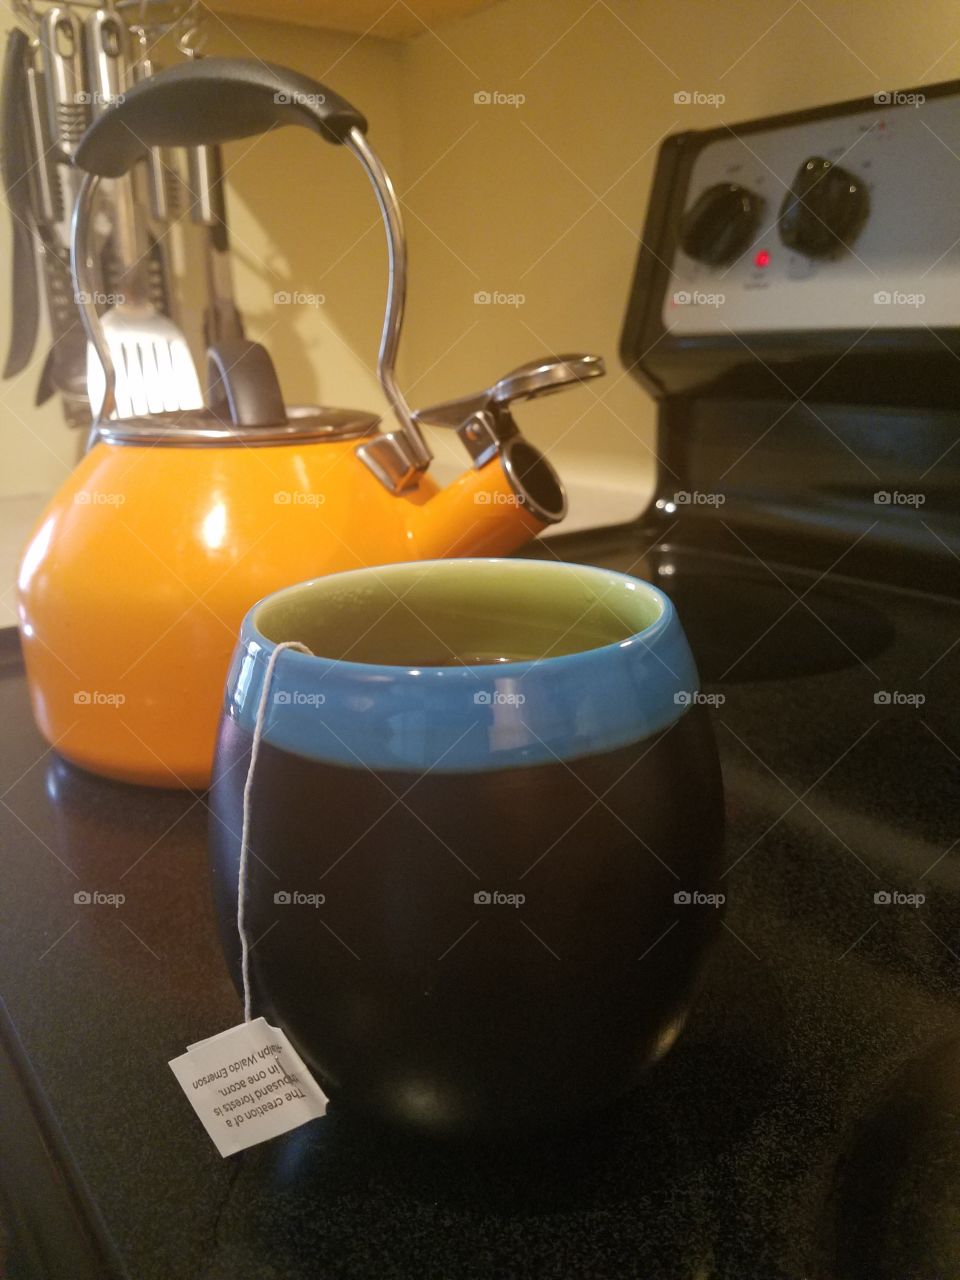 tea time